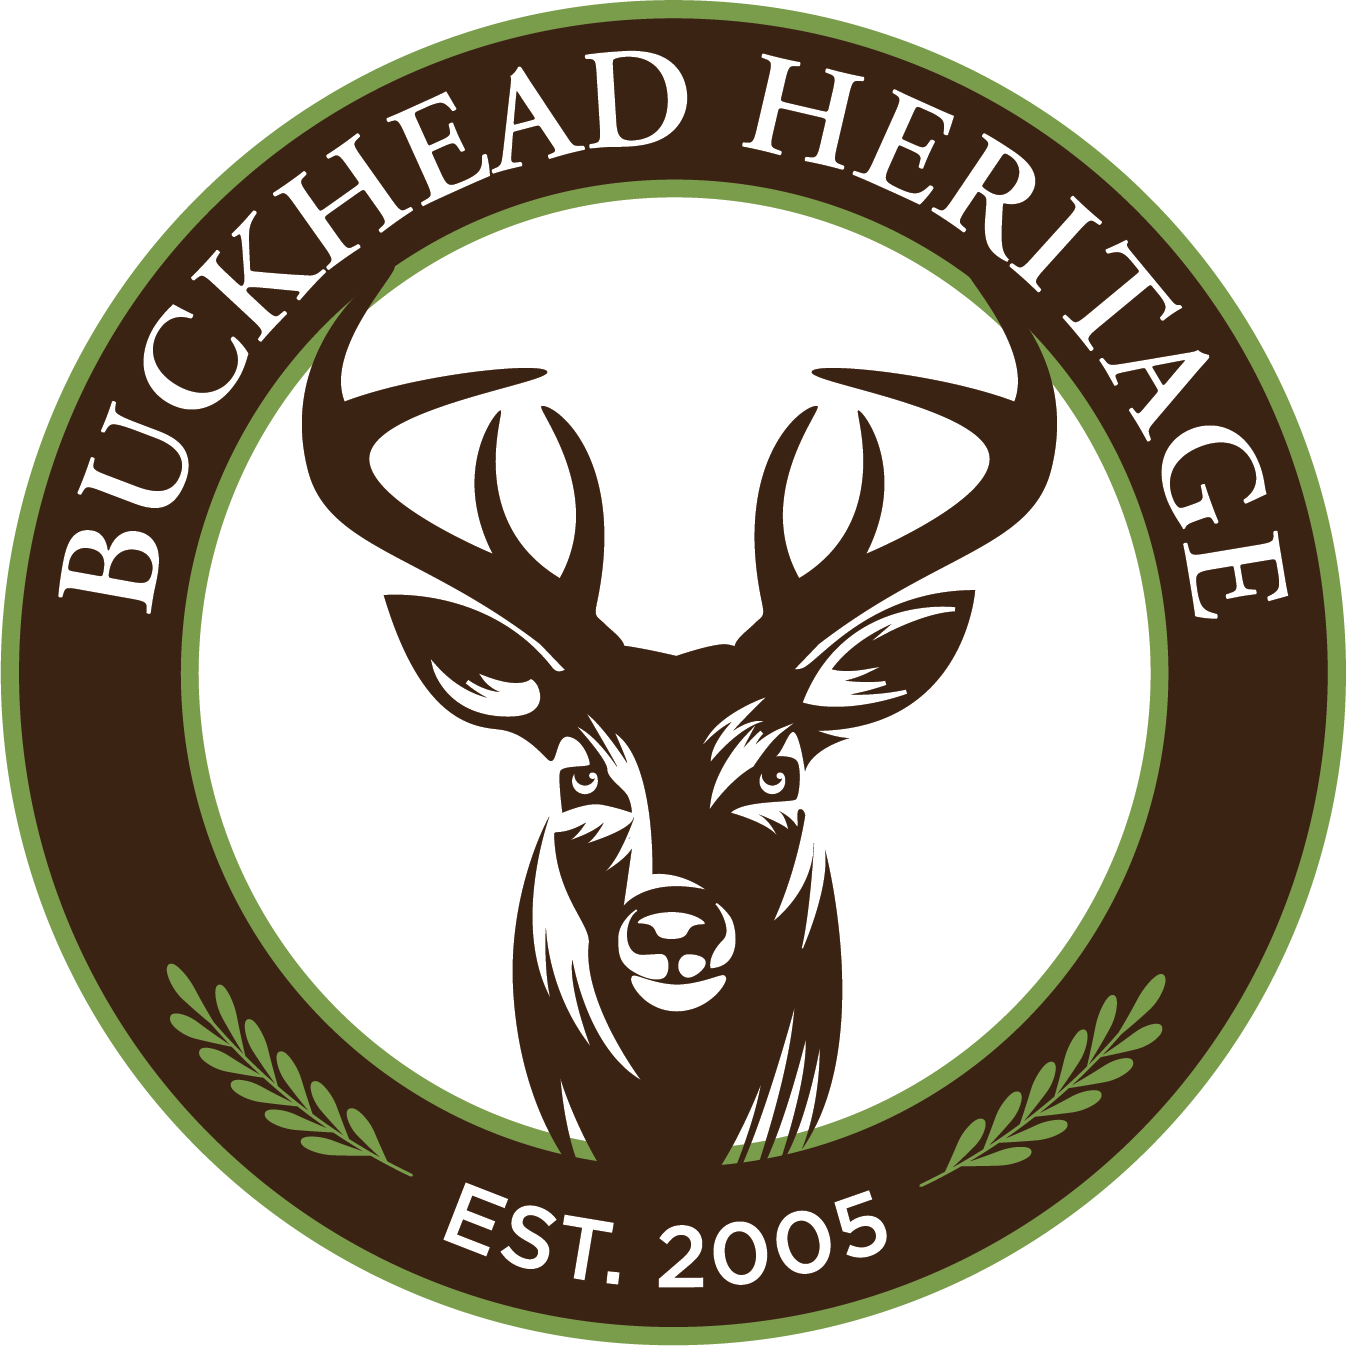 Buckhead Heritage